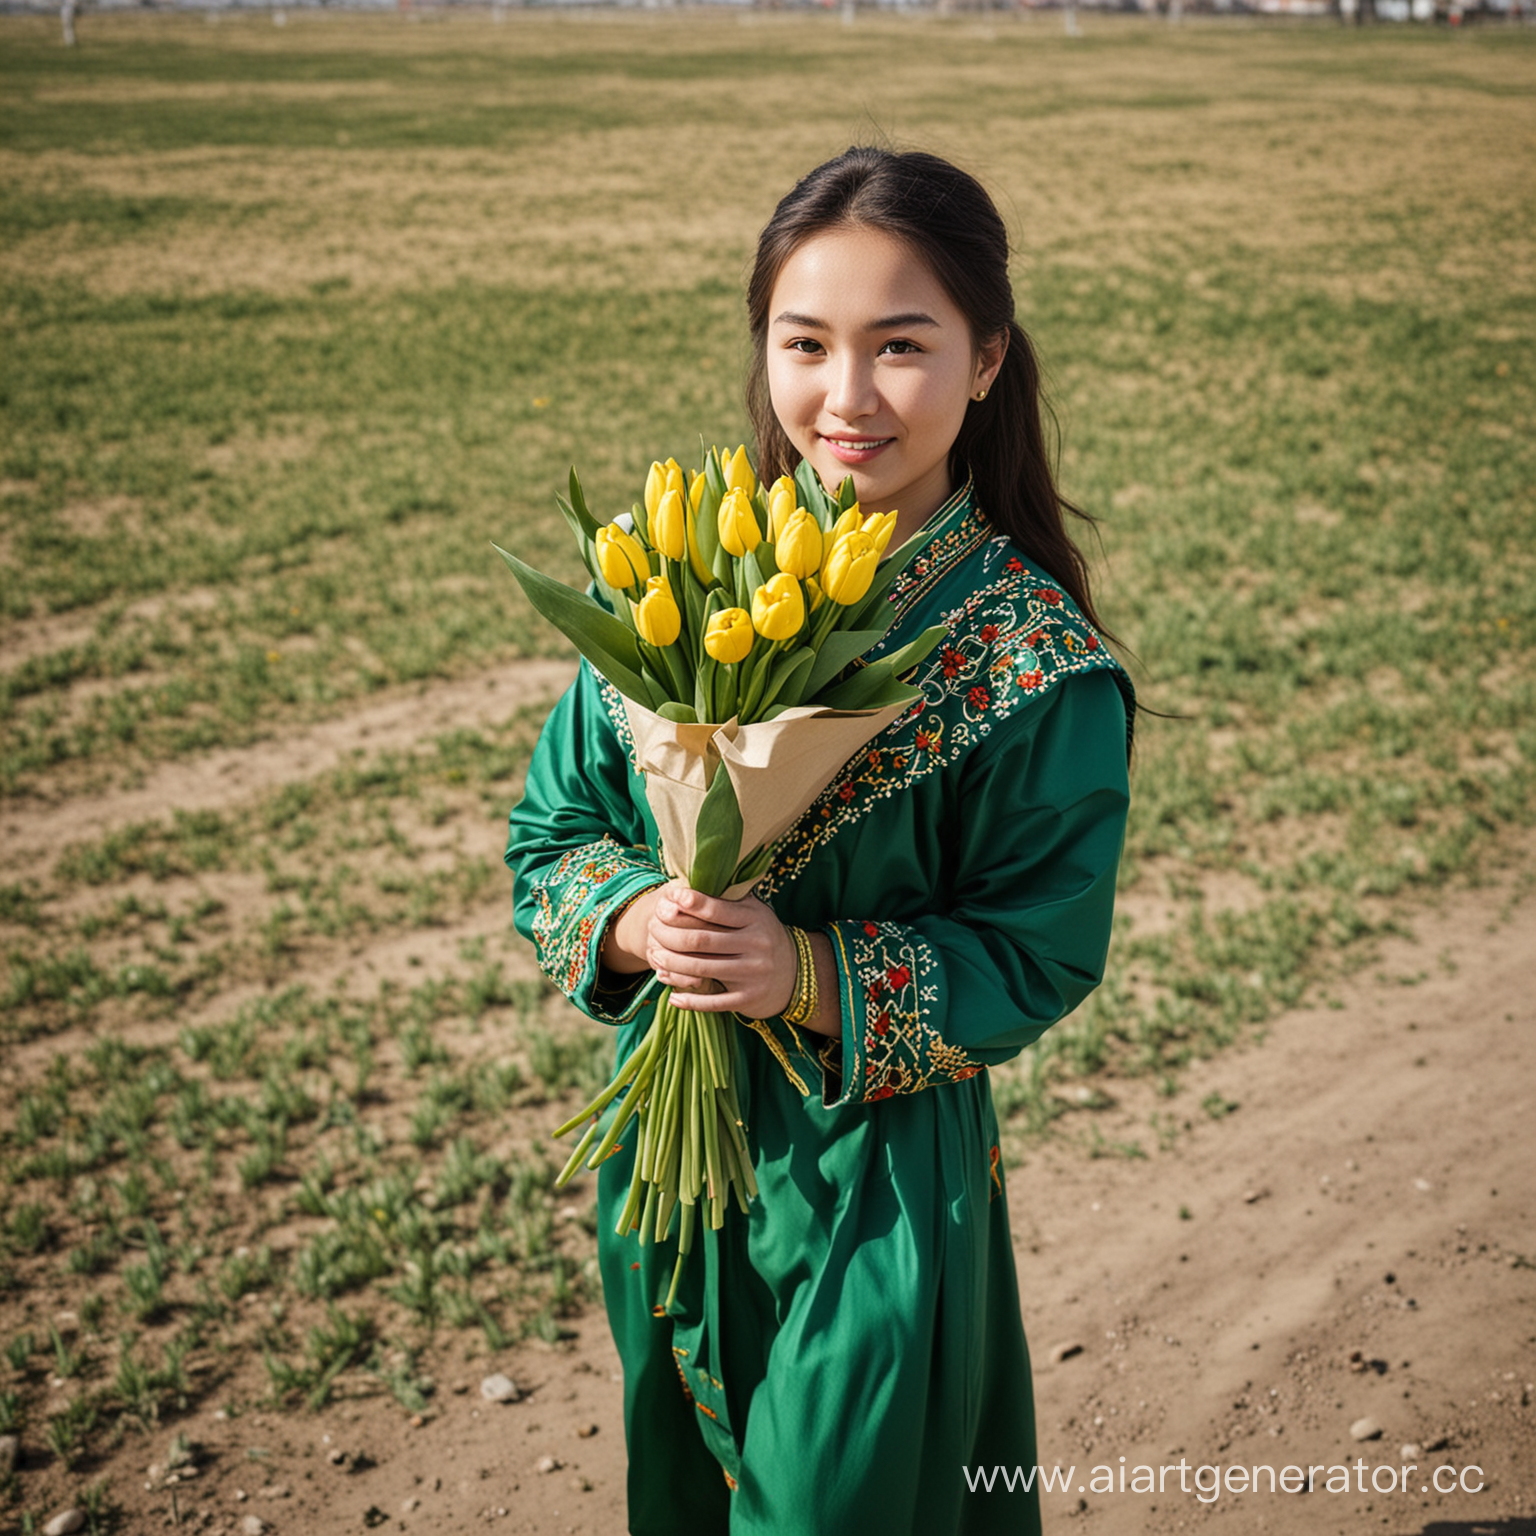 девушка казашка, в национальной одежде зеленого цвета в руках держит букет тюльпанов